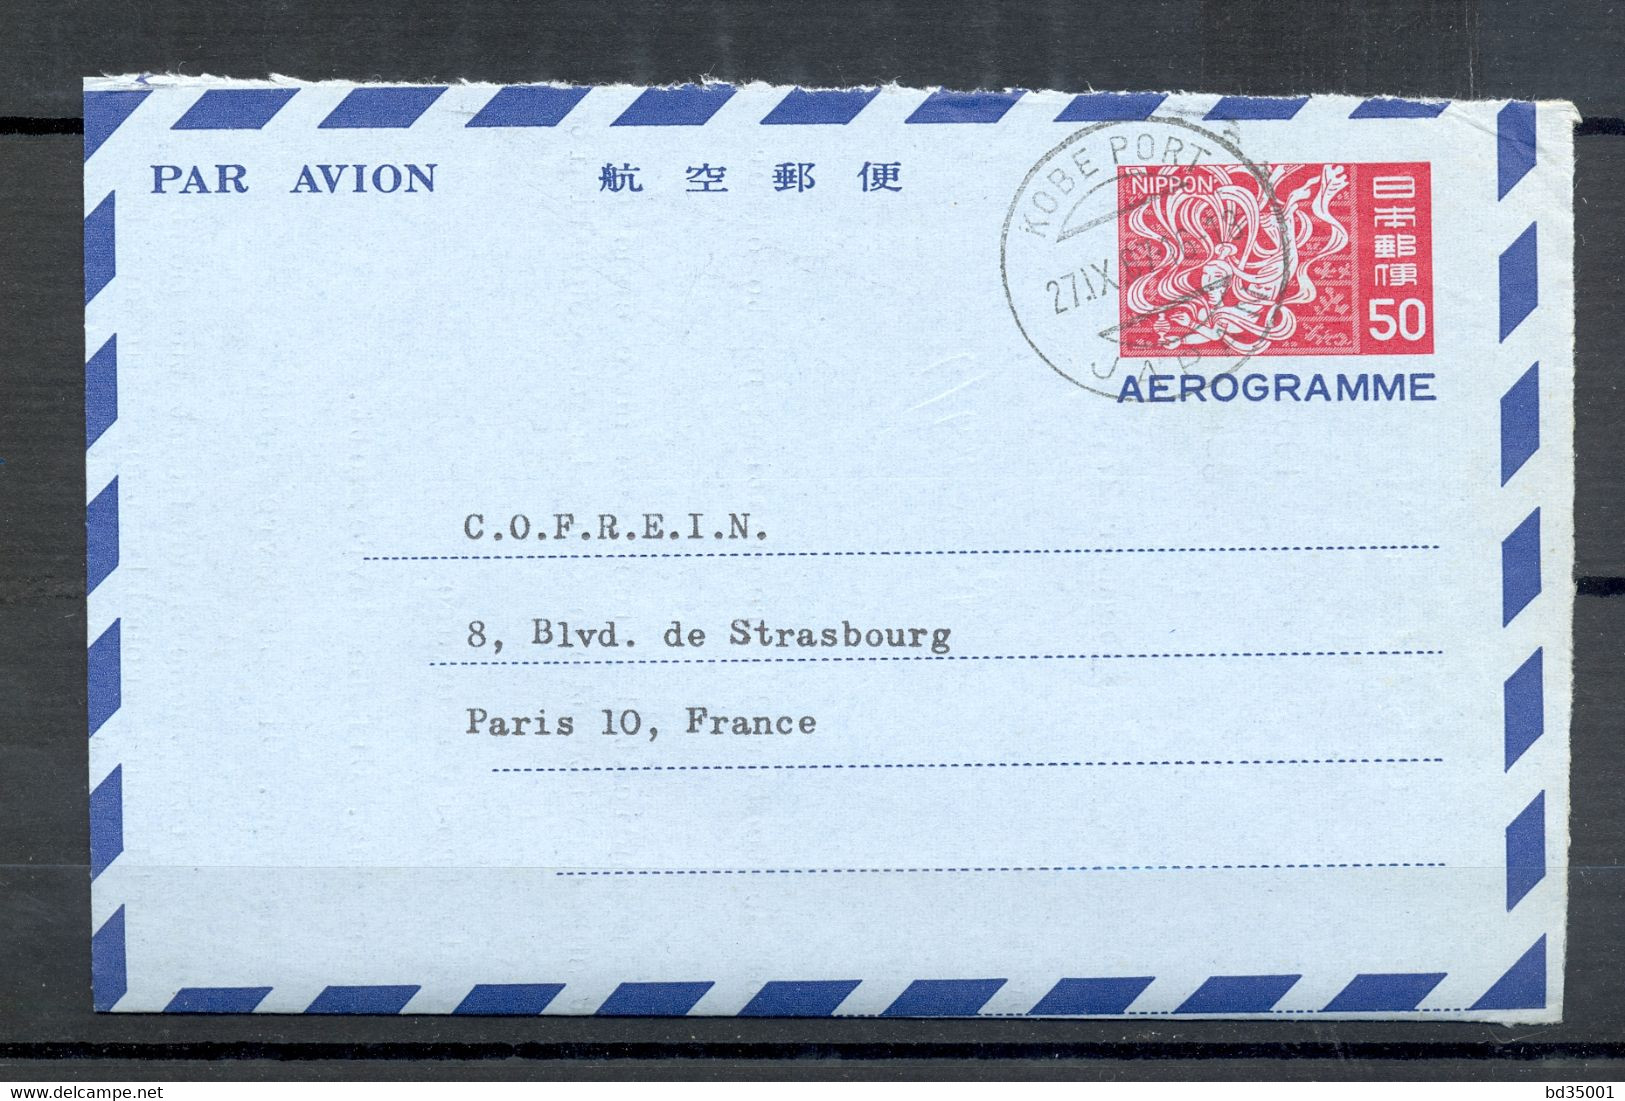 AEROGRAMME - AIR LETTER - JAPON - JAPON - 1967 - KOBE PORT VERS PARIS - (6) - Luchtpostbladen